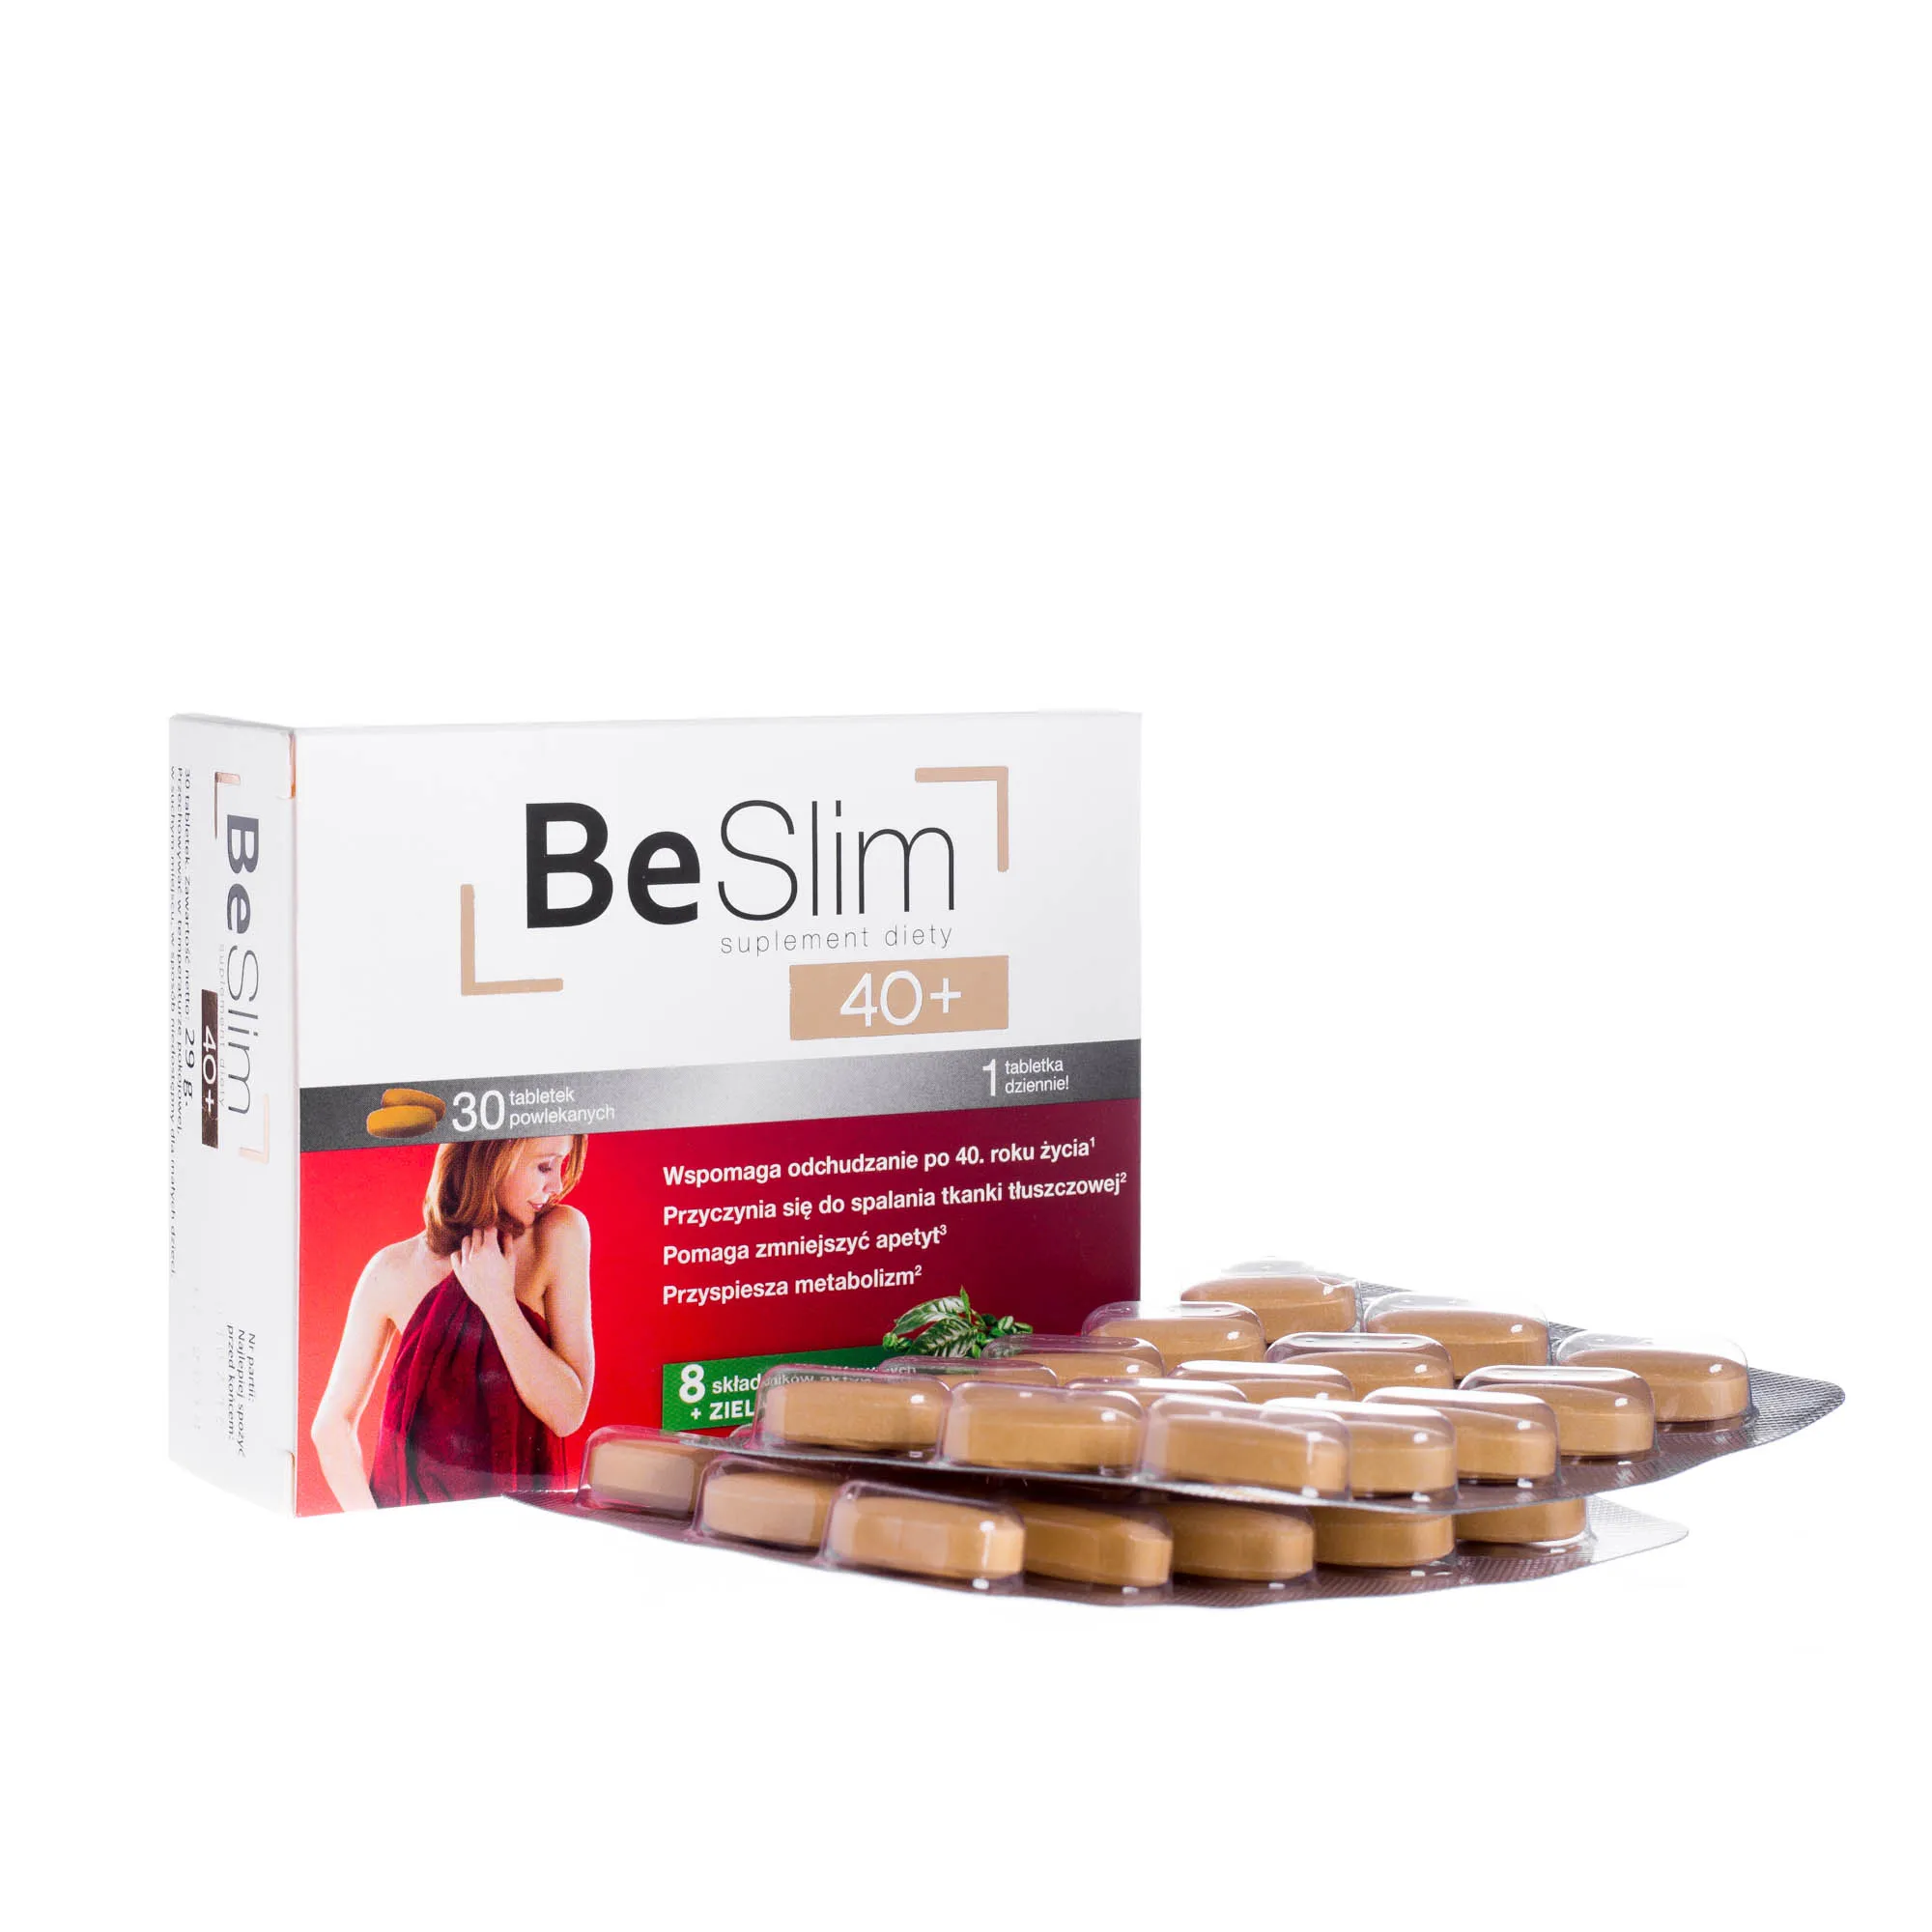 Be Slim 40+ - suplement diety wspomagający odchudzanie po 40 roku życia, 30 tabletek 